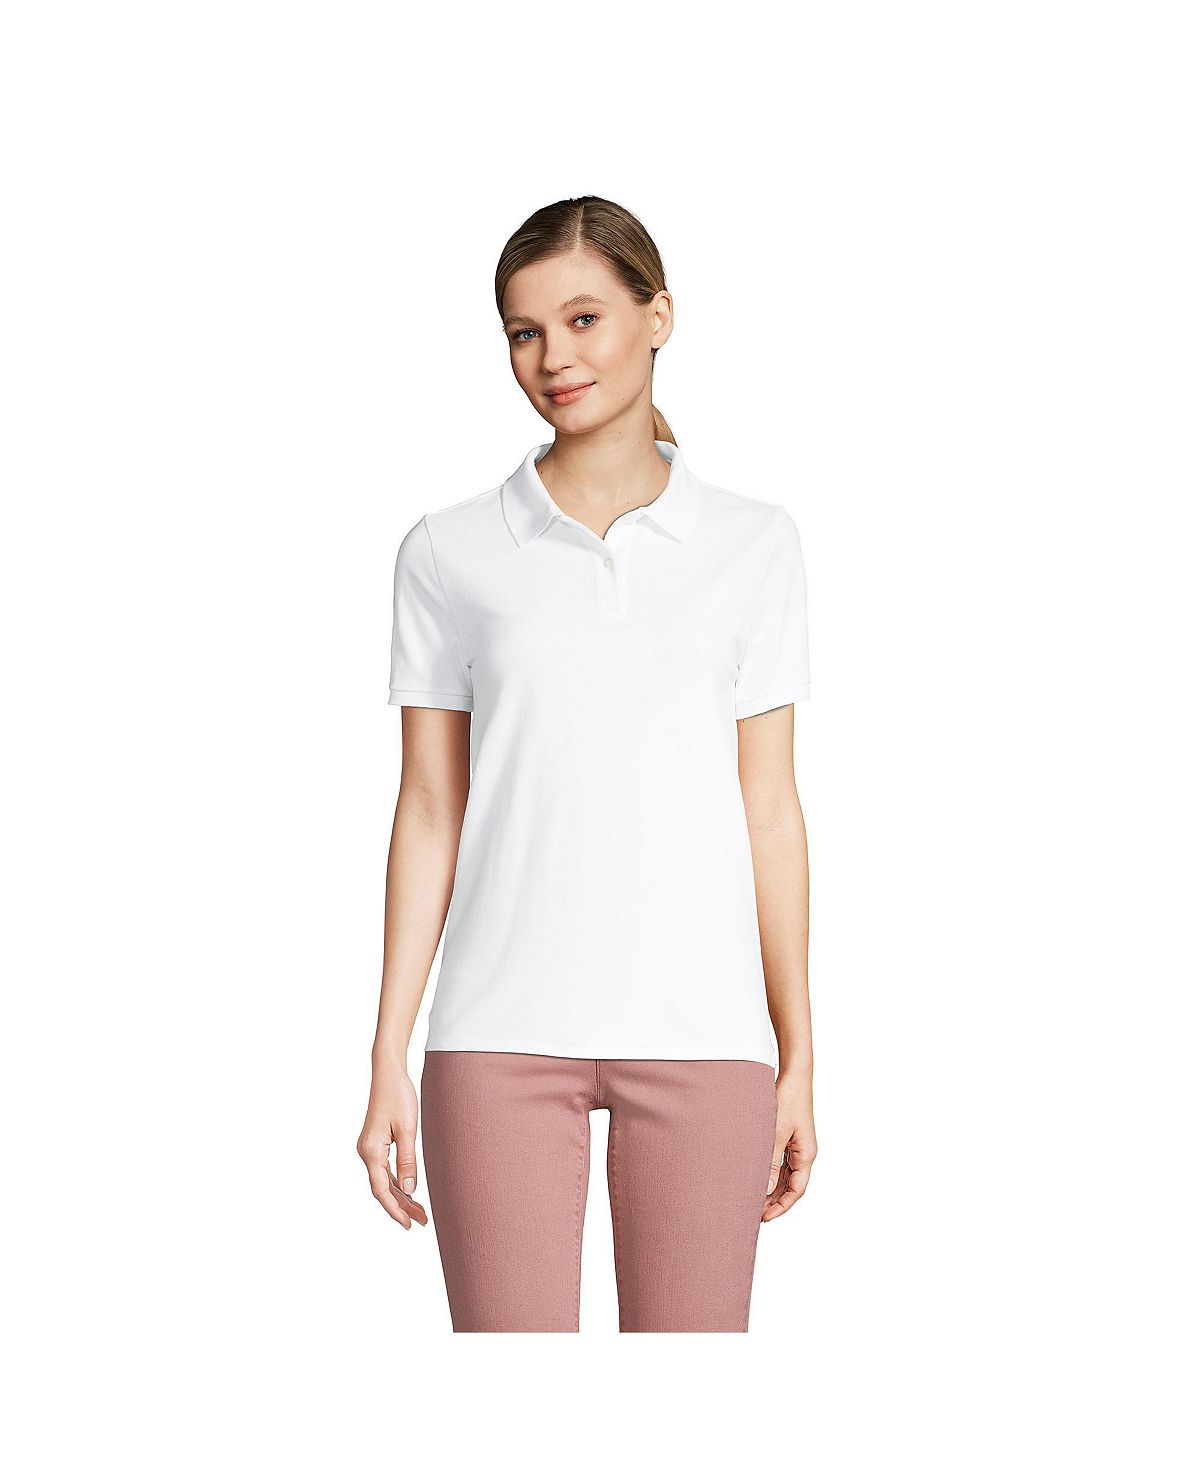 Женская рубашка-поло из сетчатого хлопка с короткими рукавами Lands' End, белый женская рубашка поло из сетчатого хлопка с короткими рукавами lands end